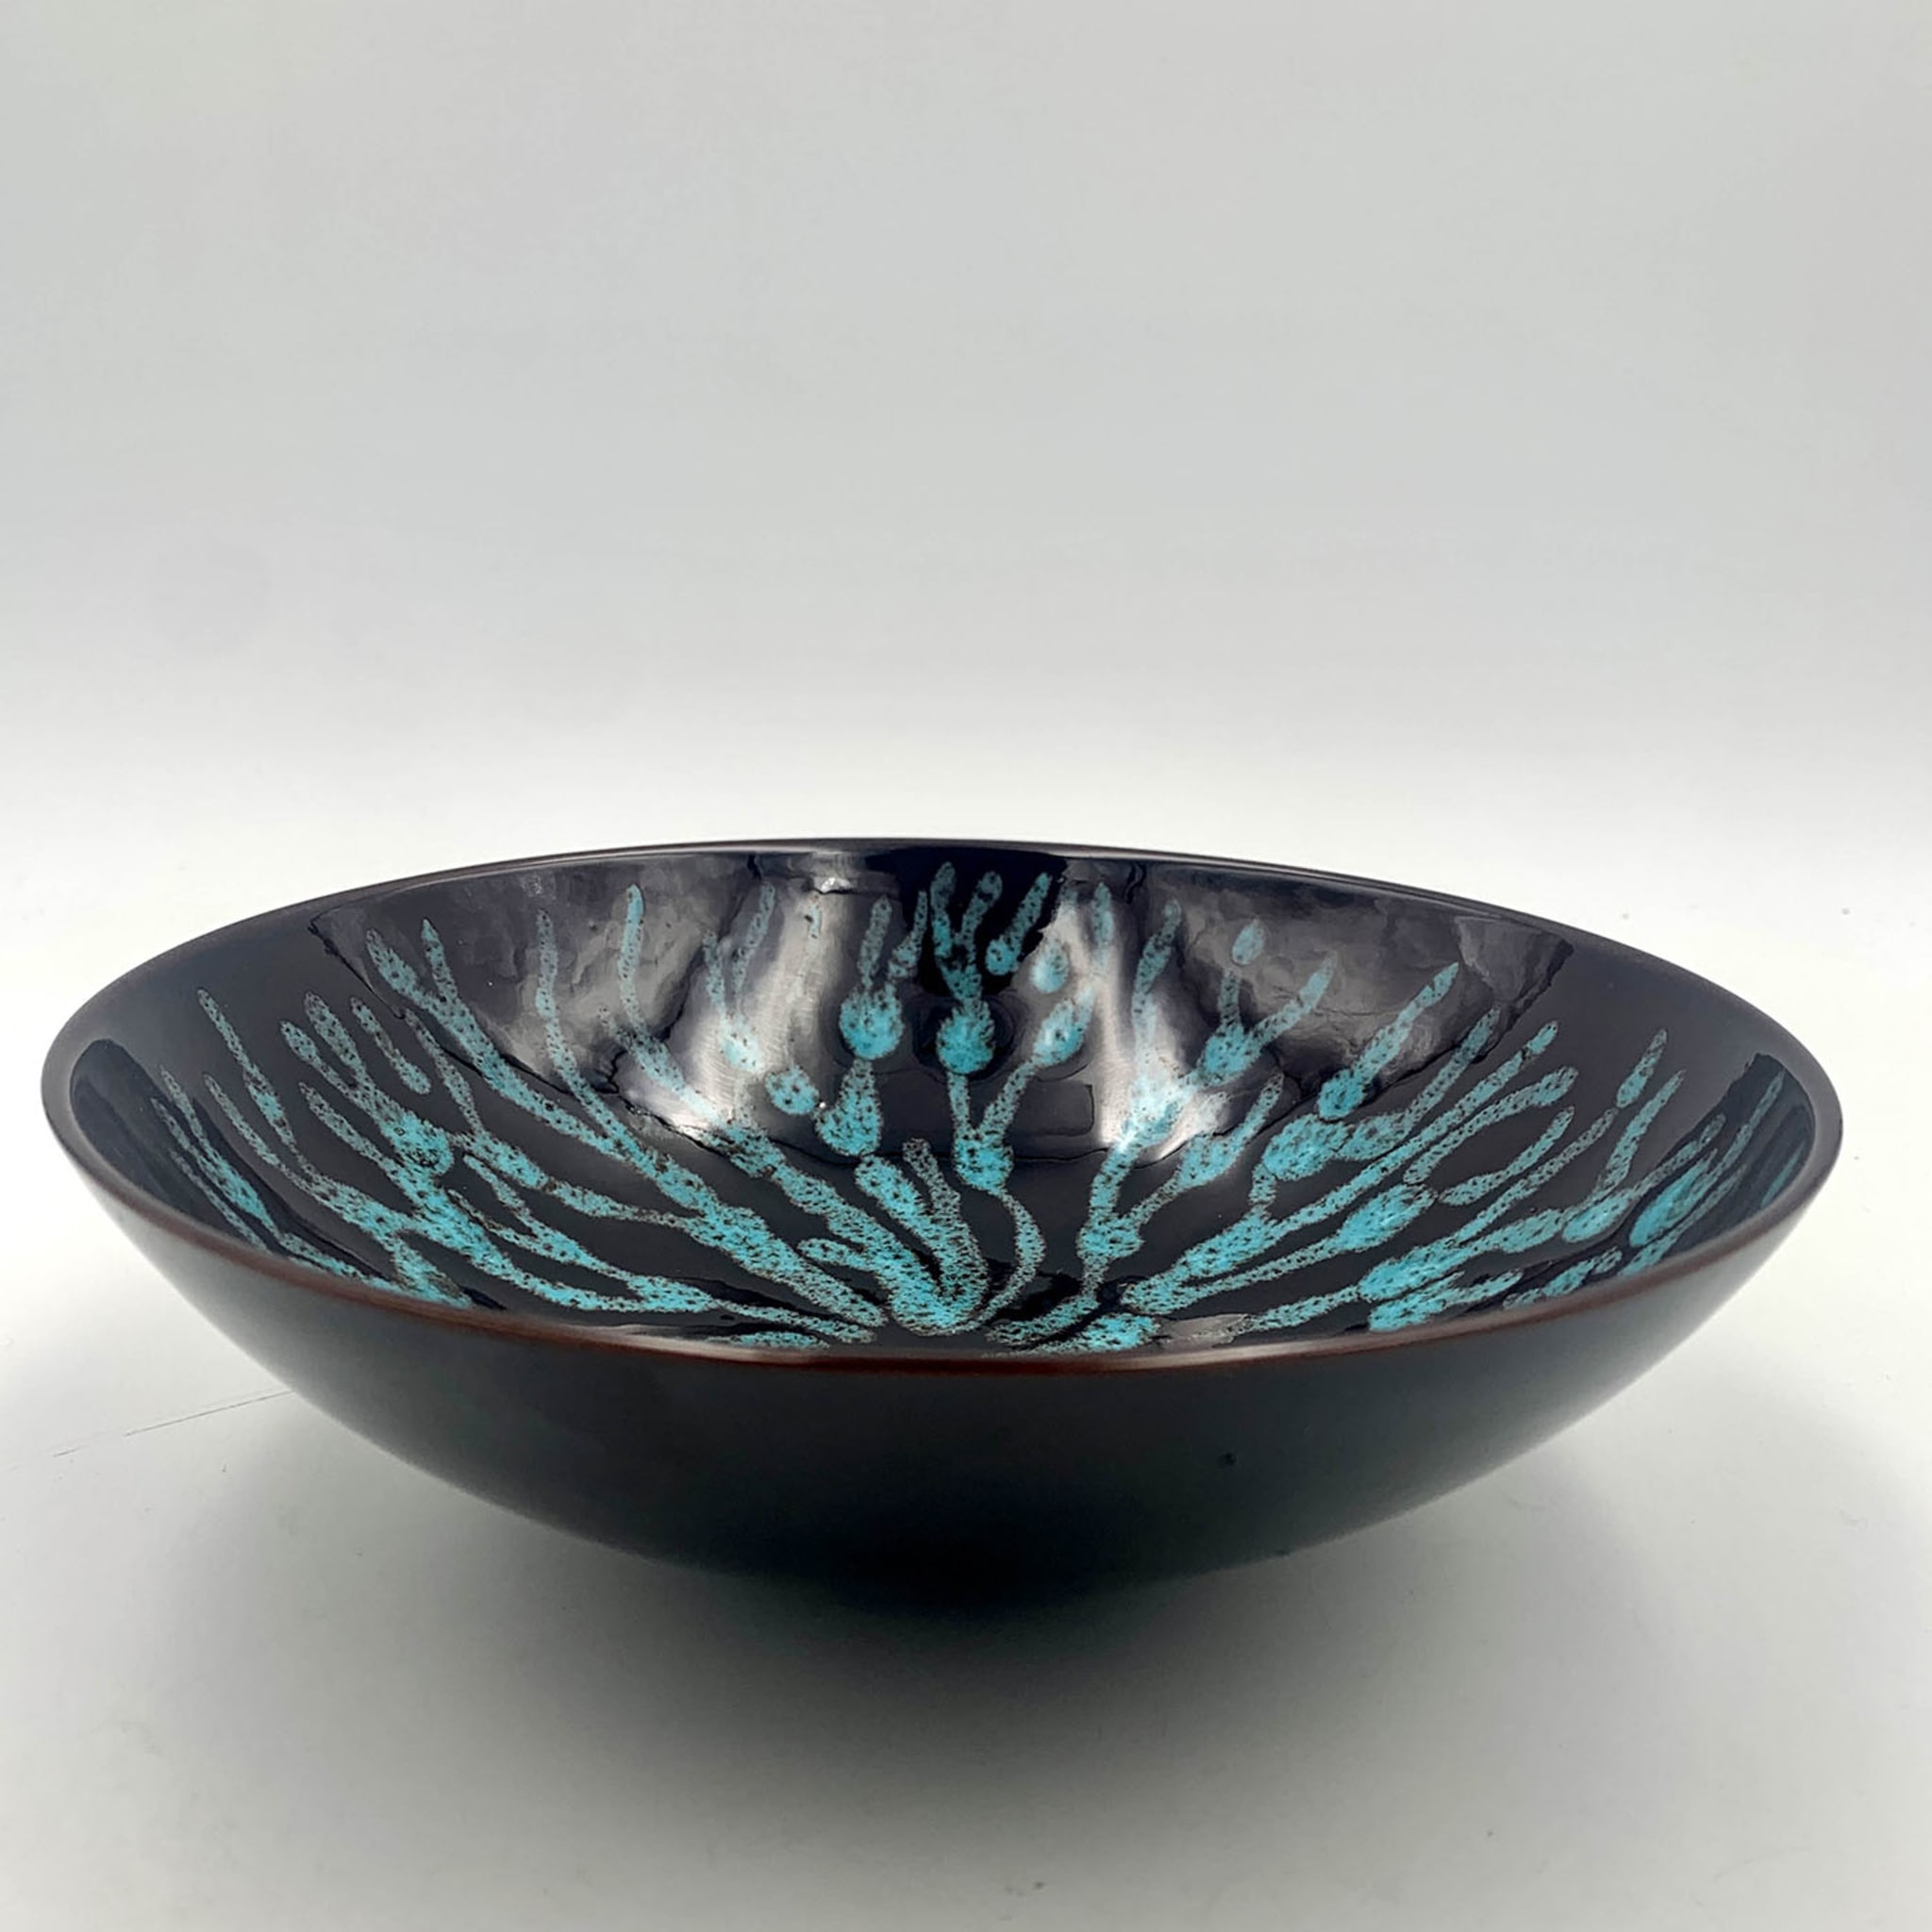 Corallo Blu Ceramic Centerpiece - Alternative view 2